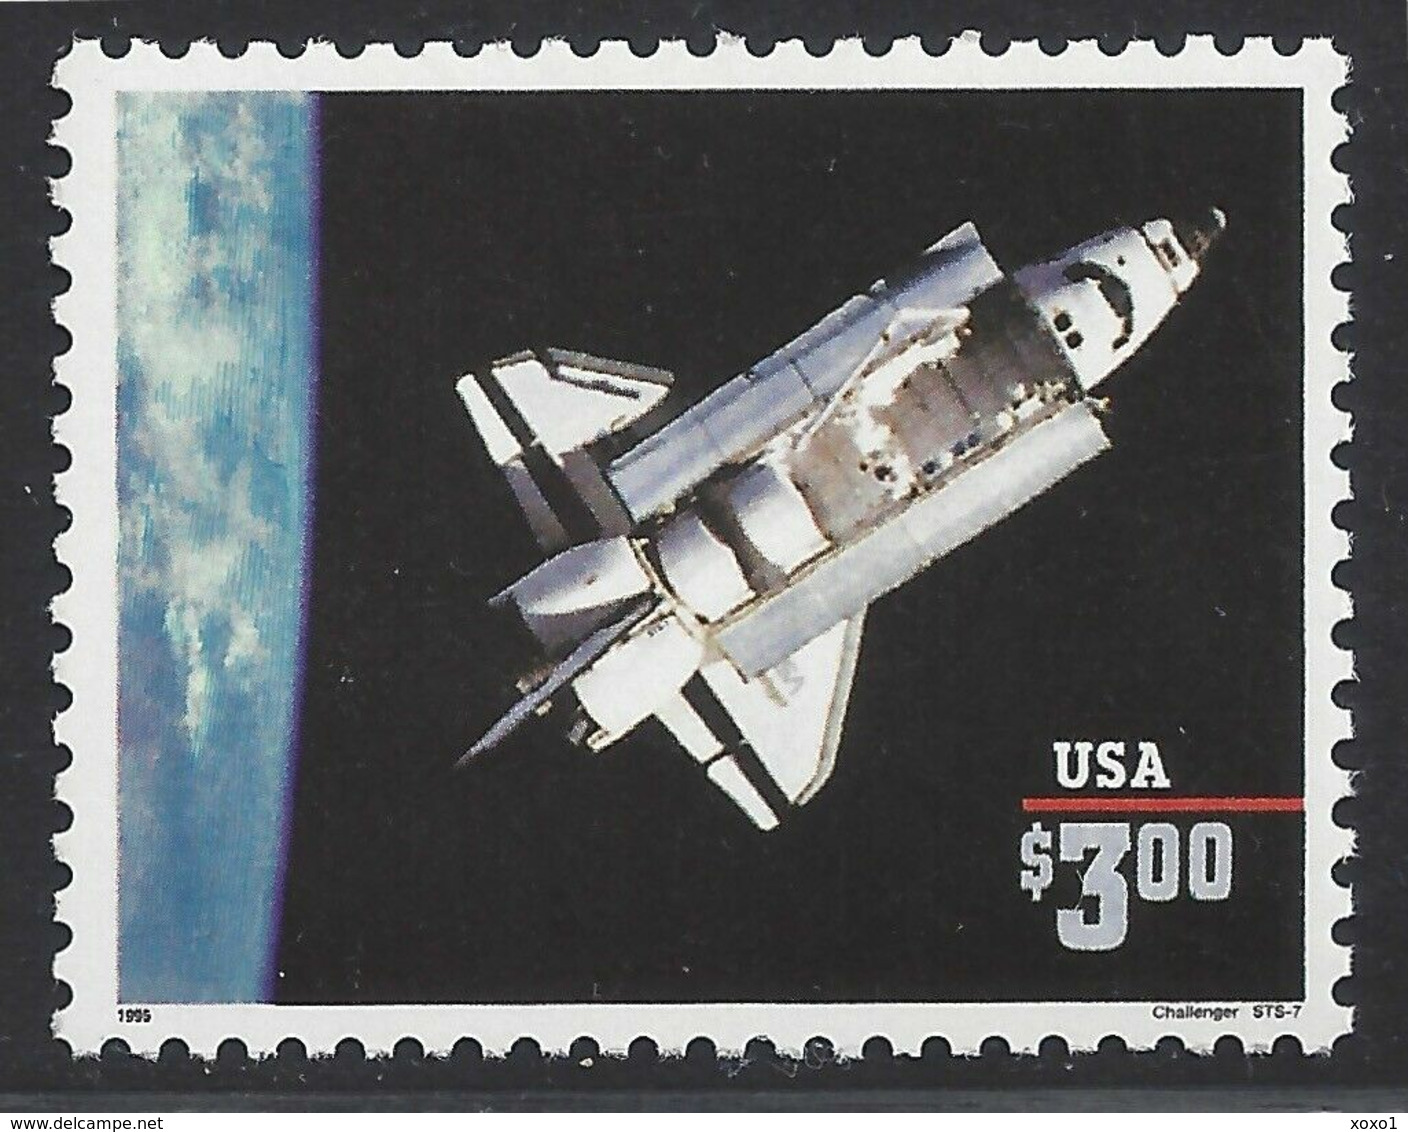 USA 1995 MiNr. 2581 I  CHALLENGER SPACE SHUTTLE 1v  MNH**  7.50 € - Stati Uniti